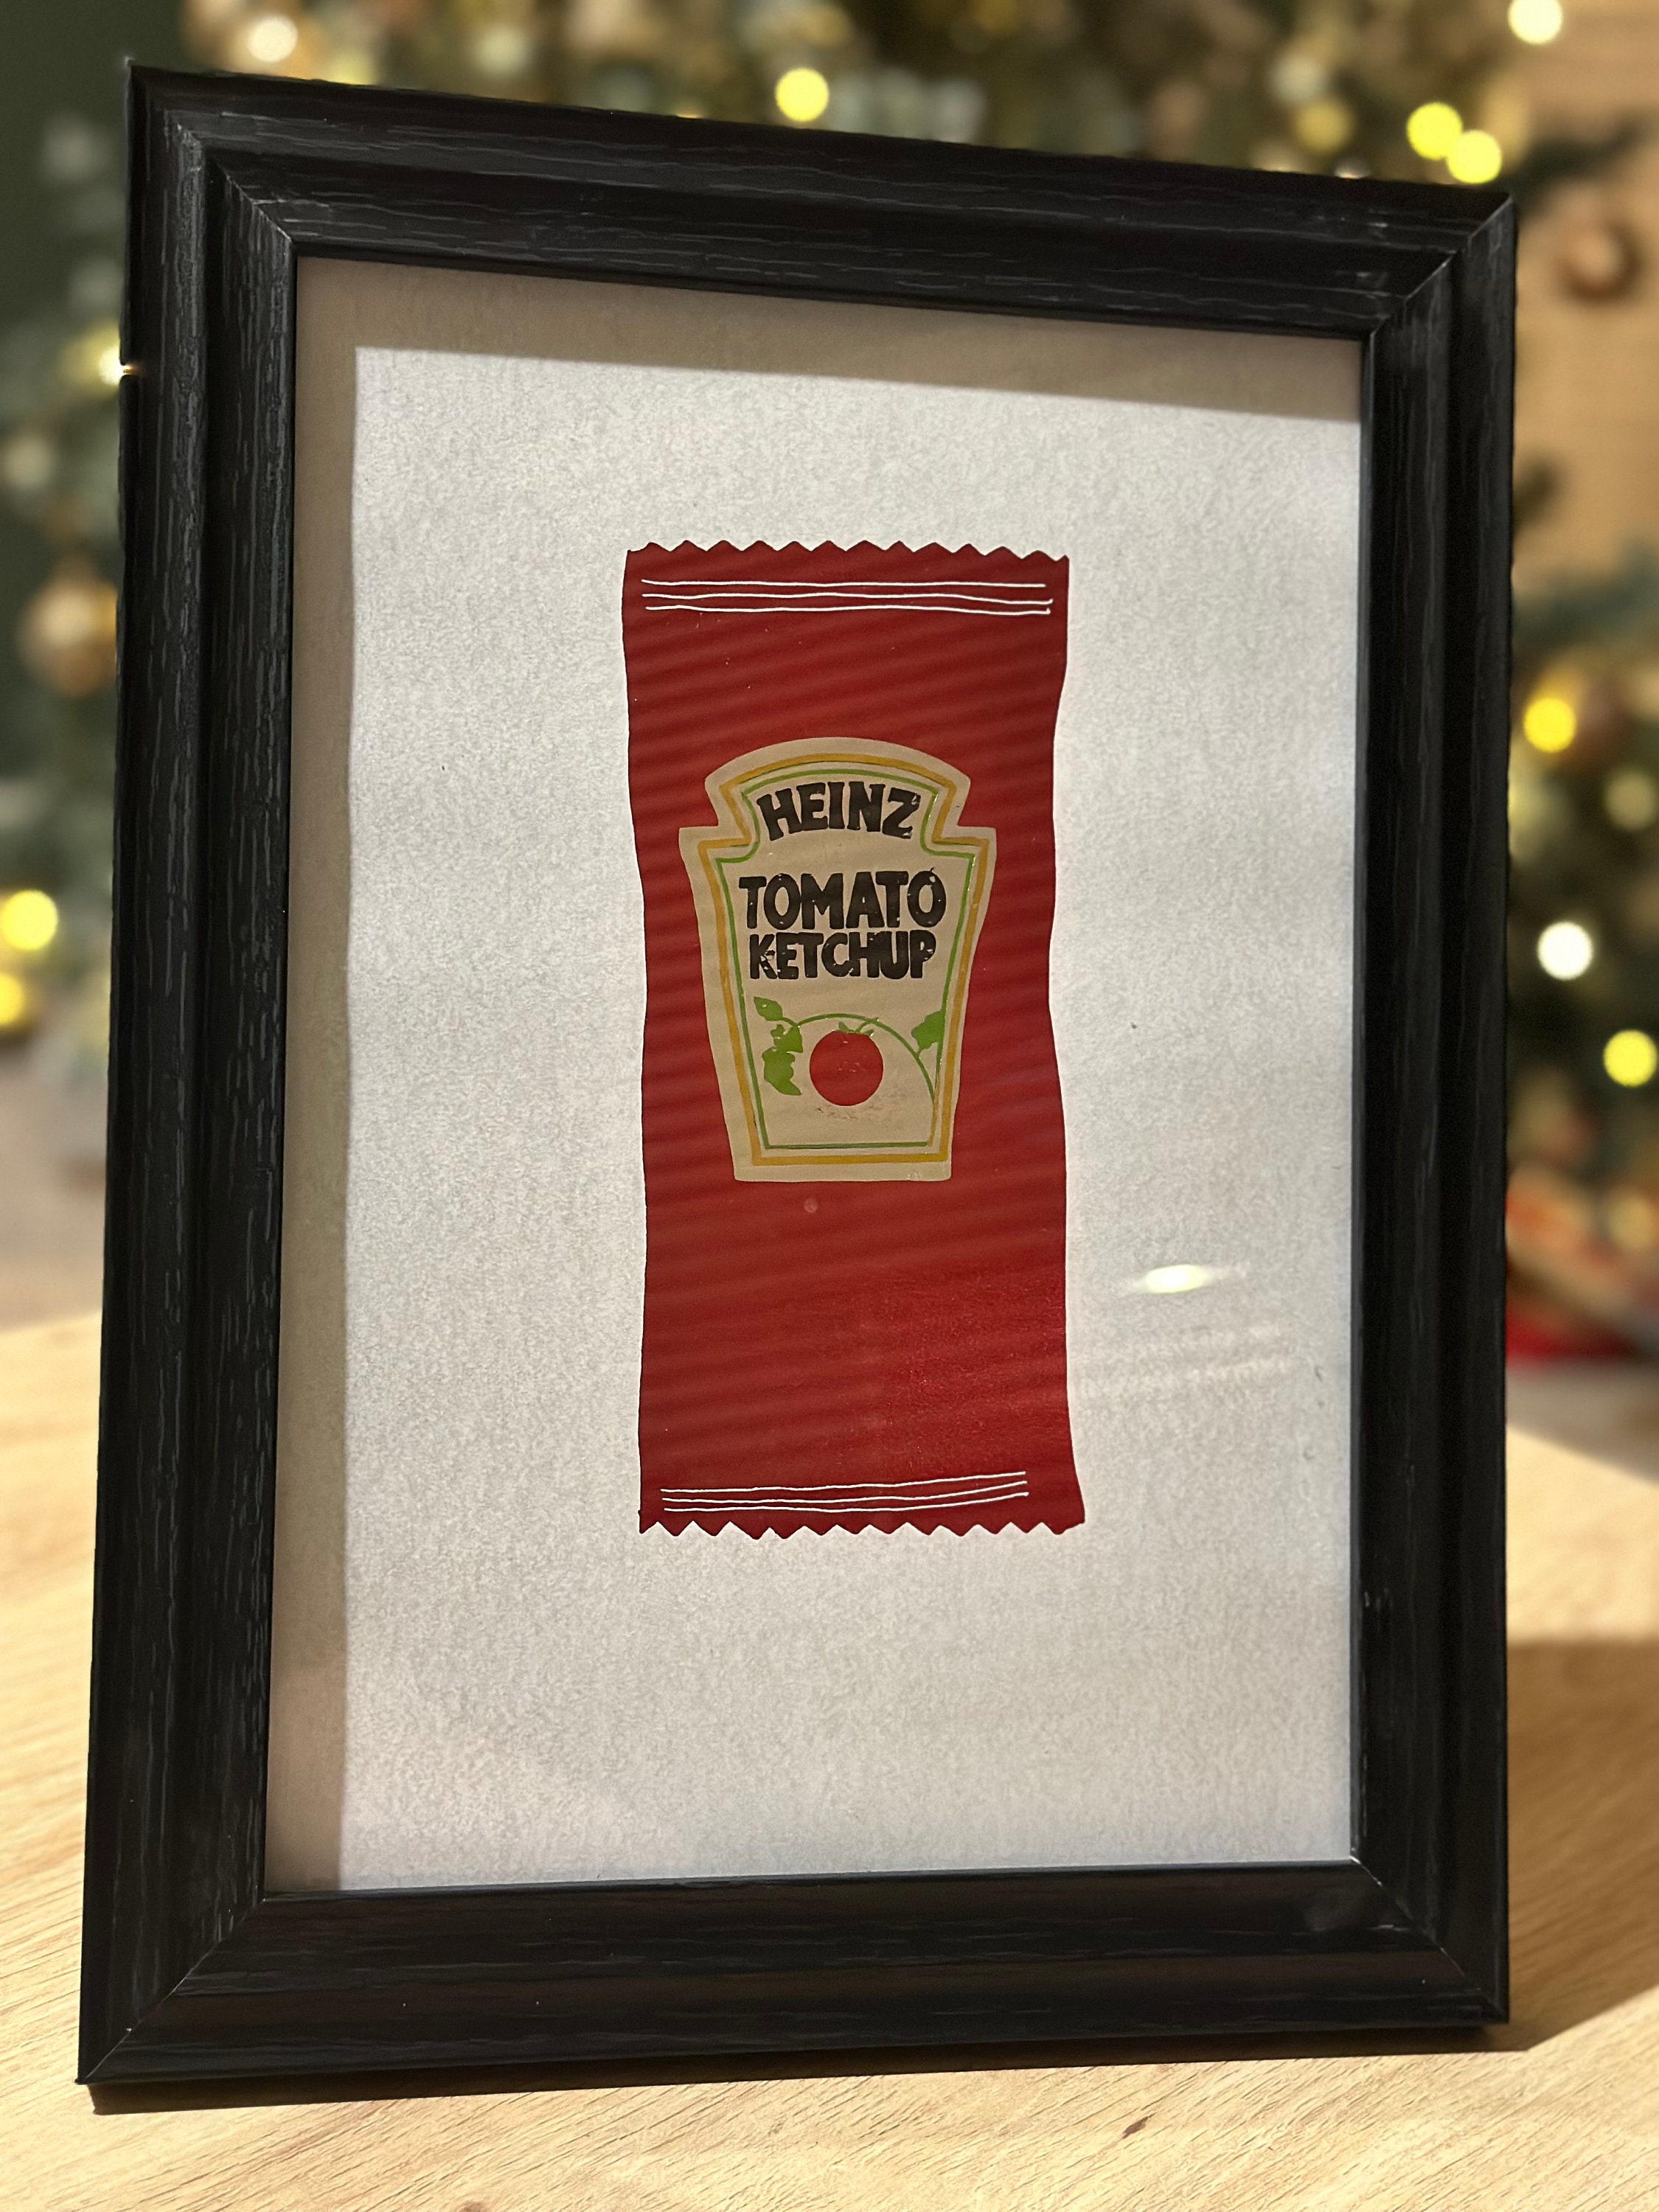 Faux ketchup renversé paquets de moutarde renversés Joke Gag Prank